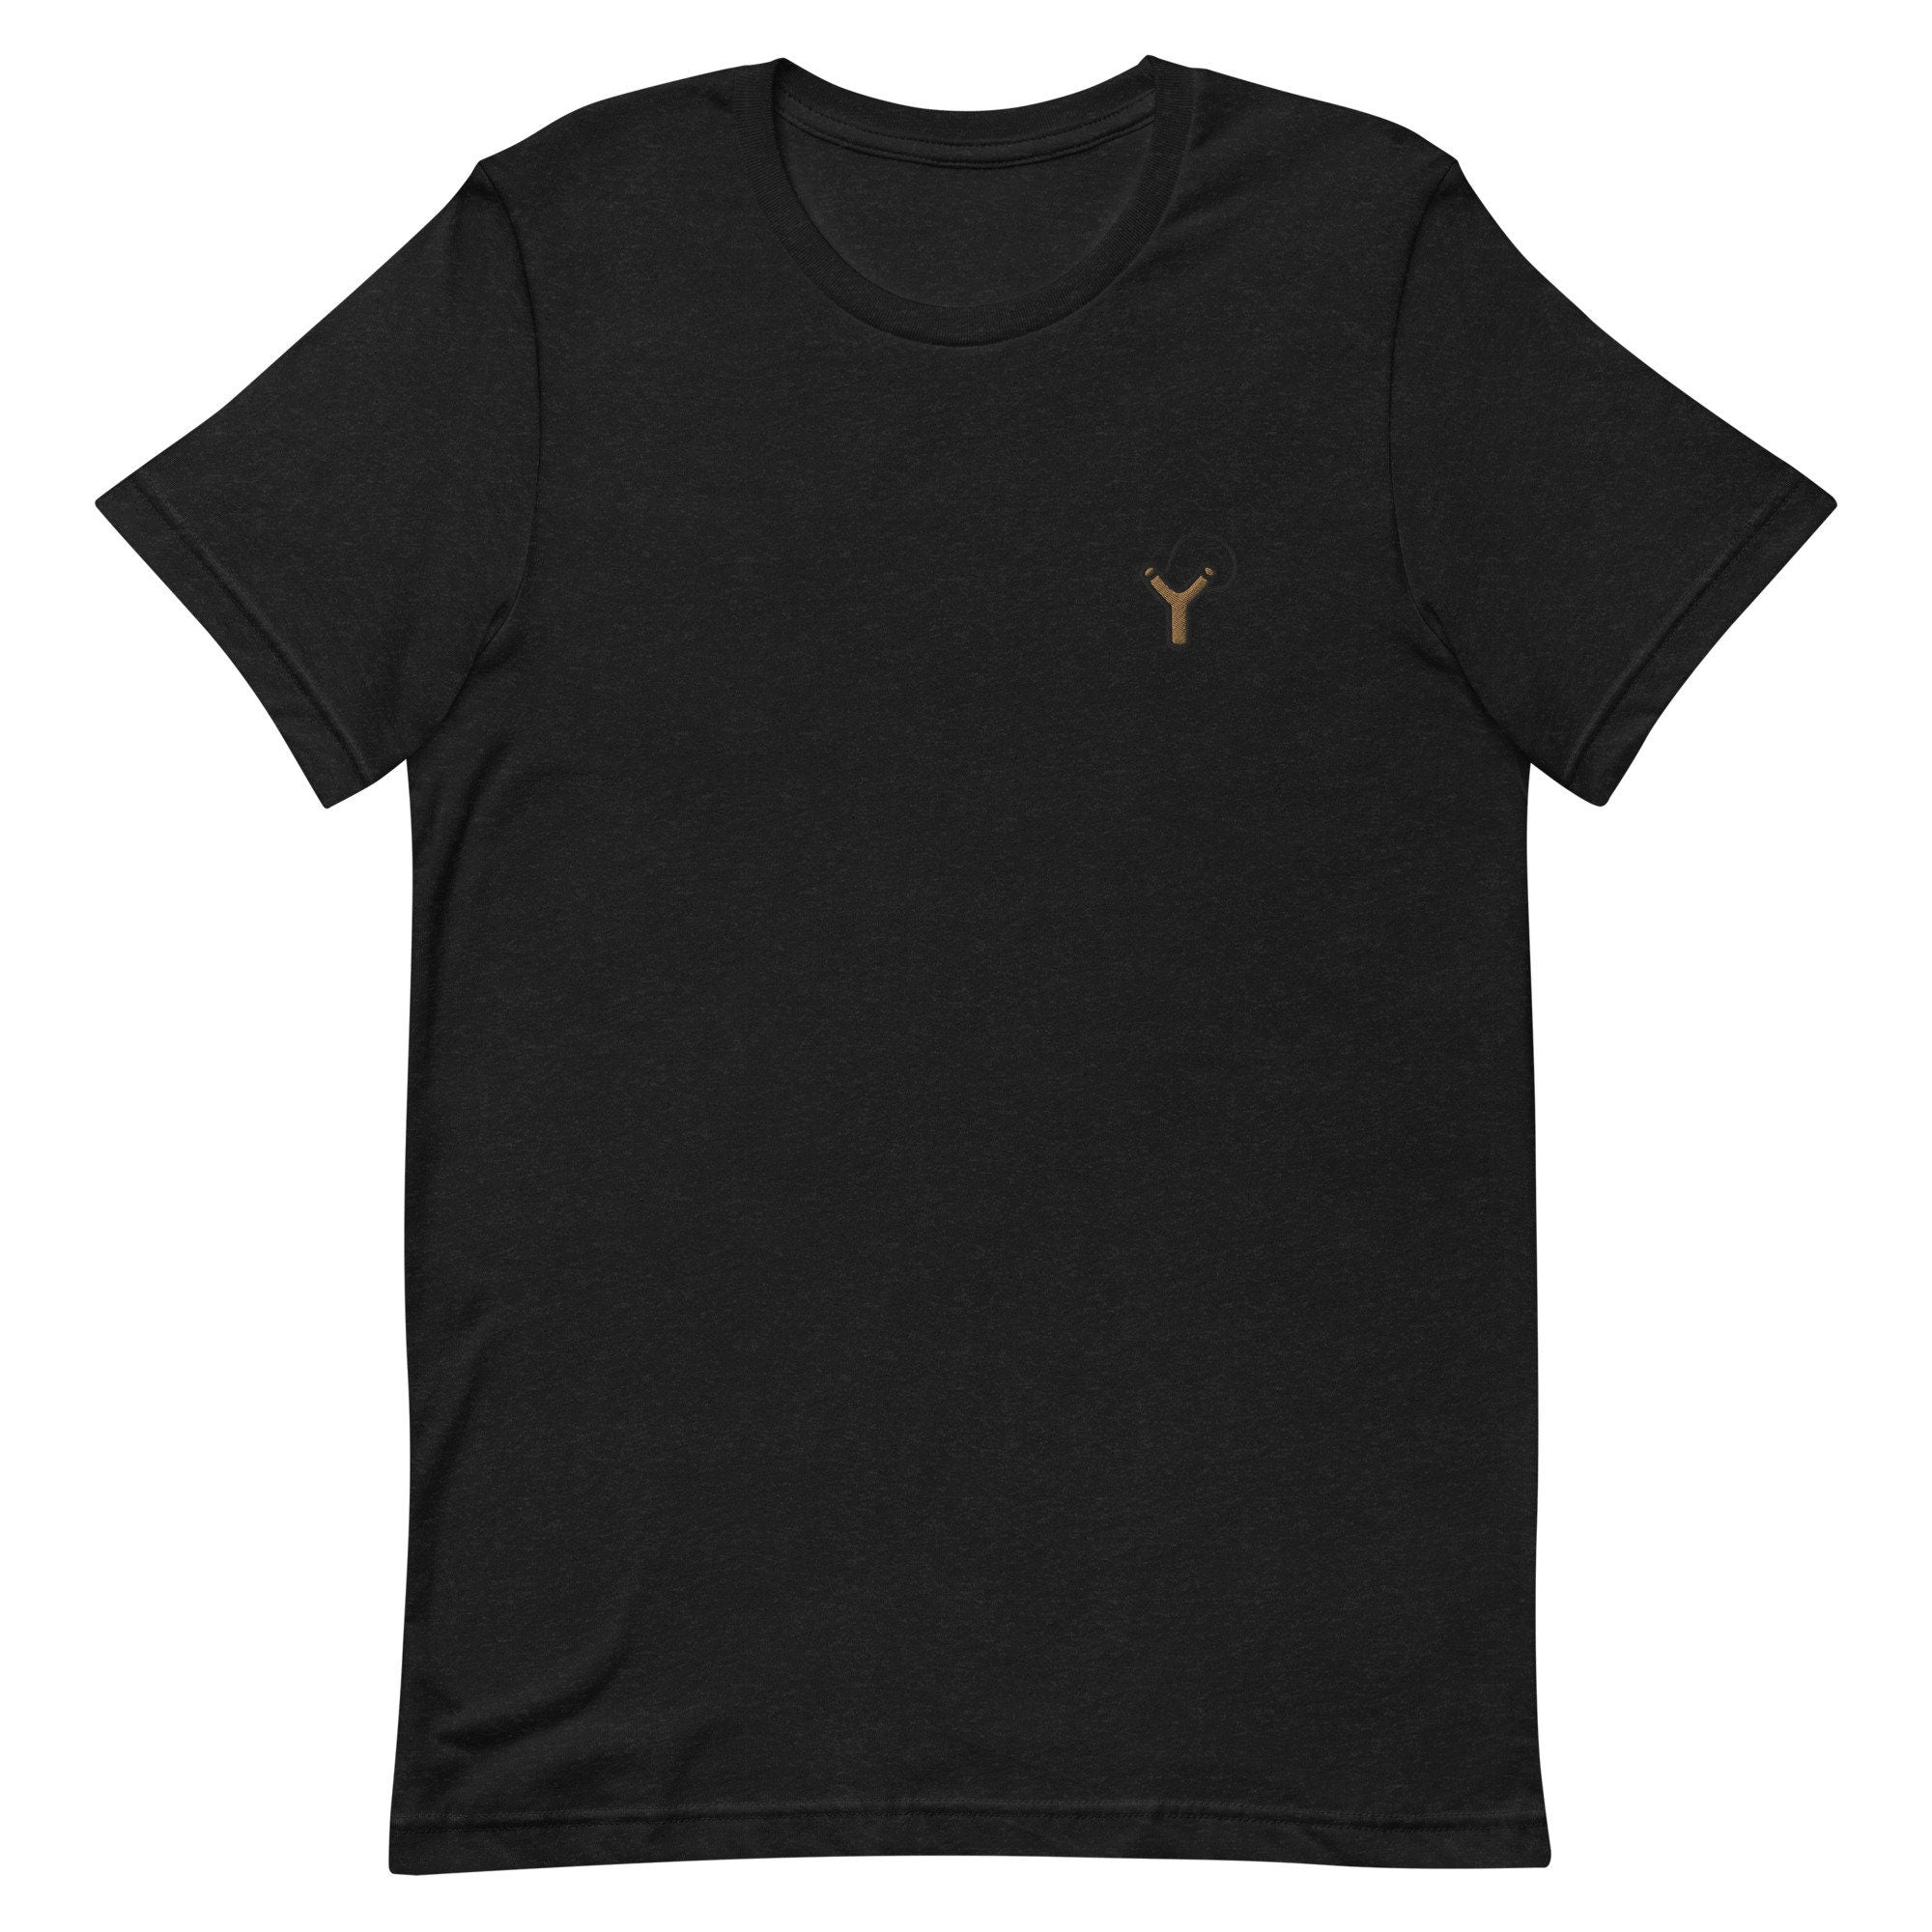 Sling Shot Premium Men's T-Shirt, Embroidered Men's T-Shirt Gift for Boyfriend, Men's Short Sleeve Shirt - Multiple Colors